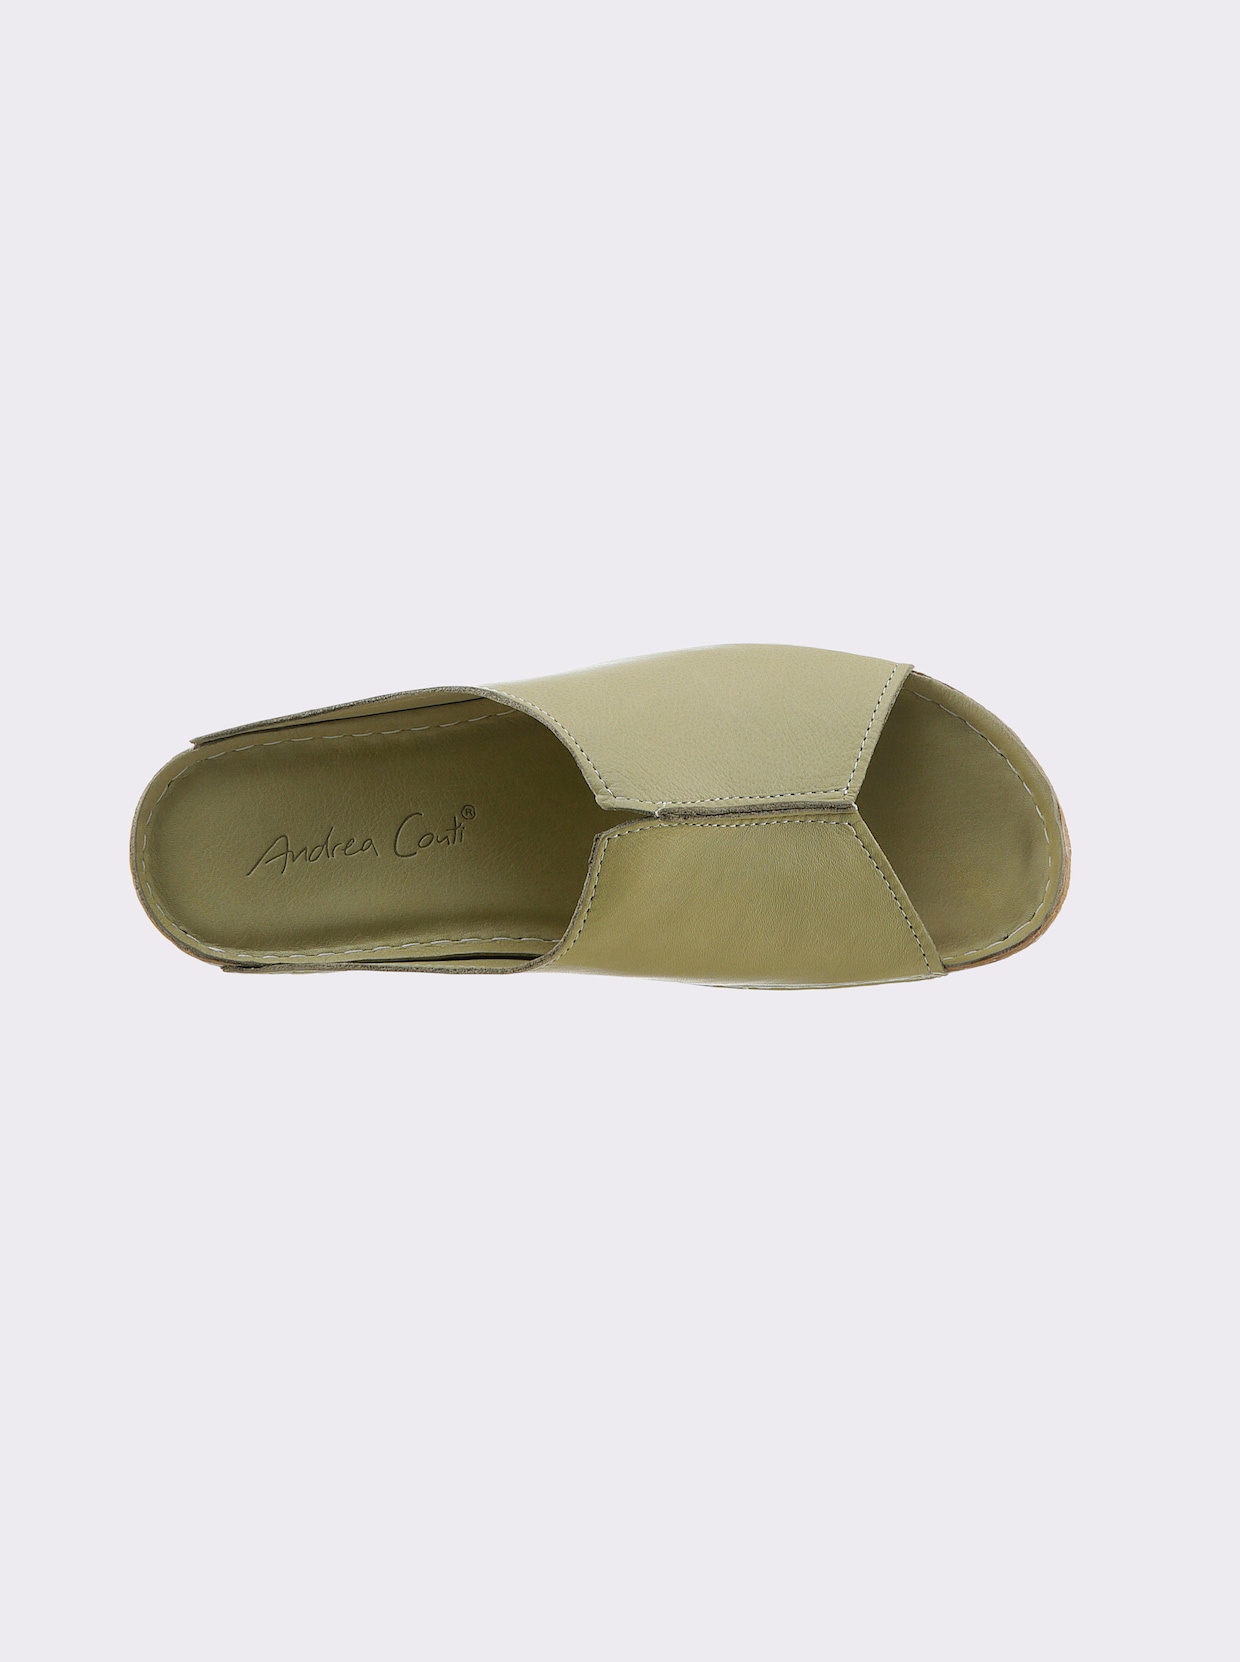 Andrea Conti slippers - pistache